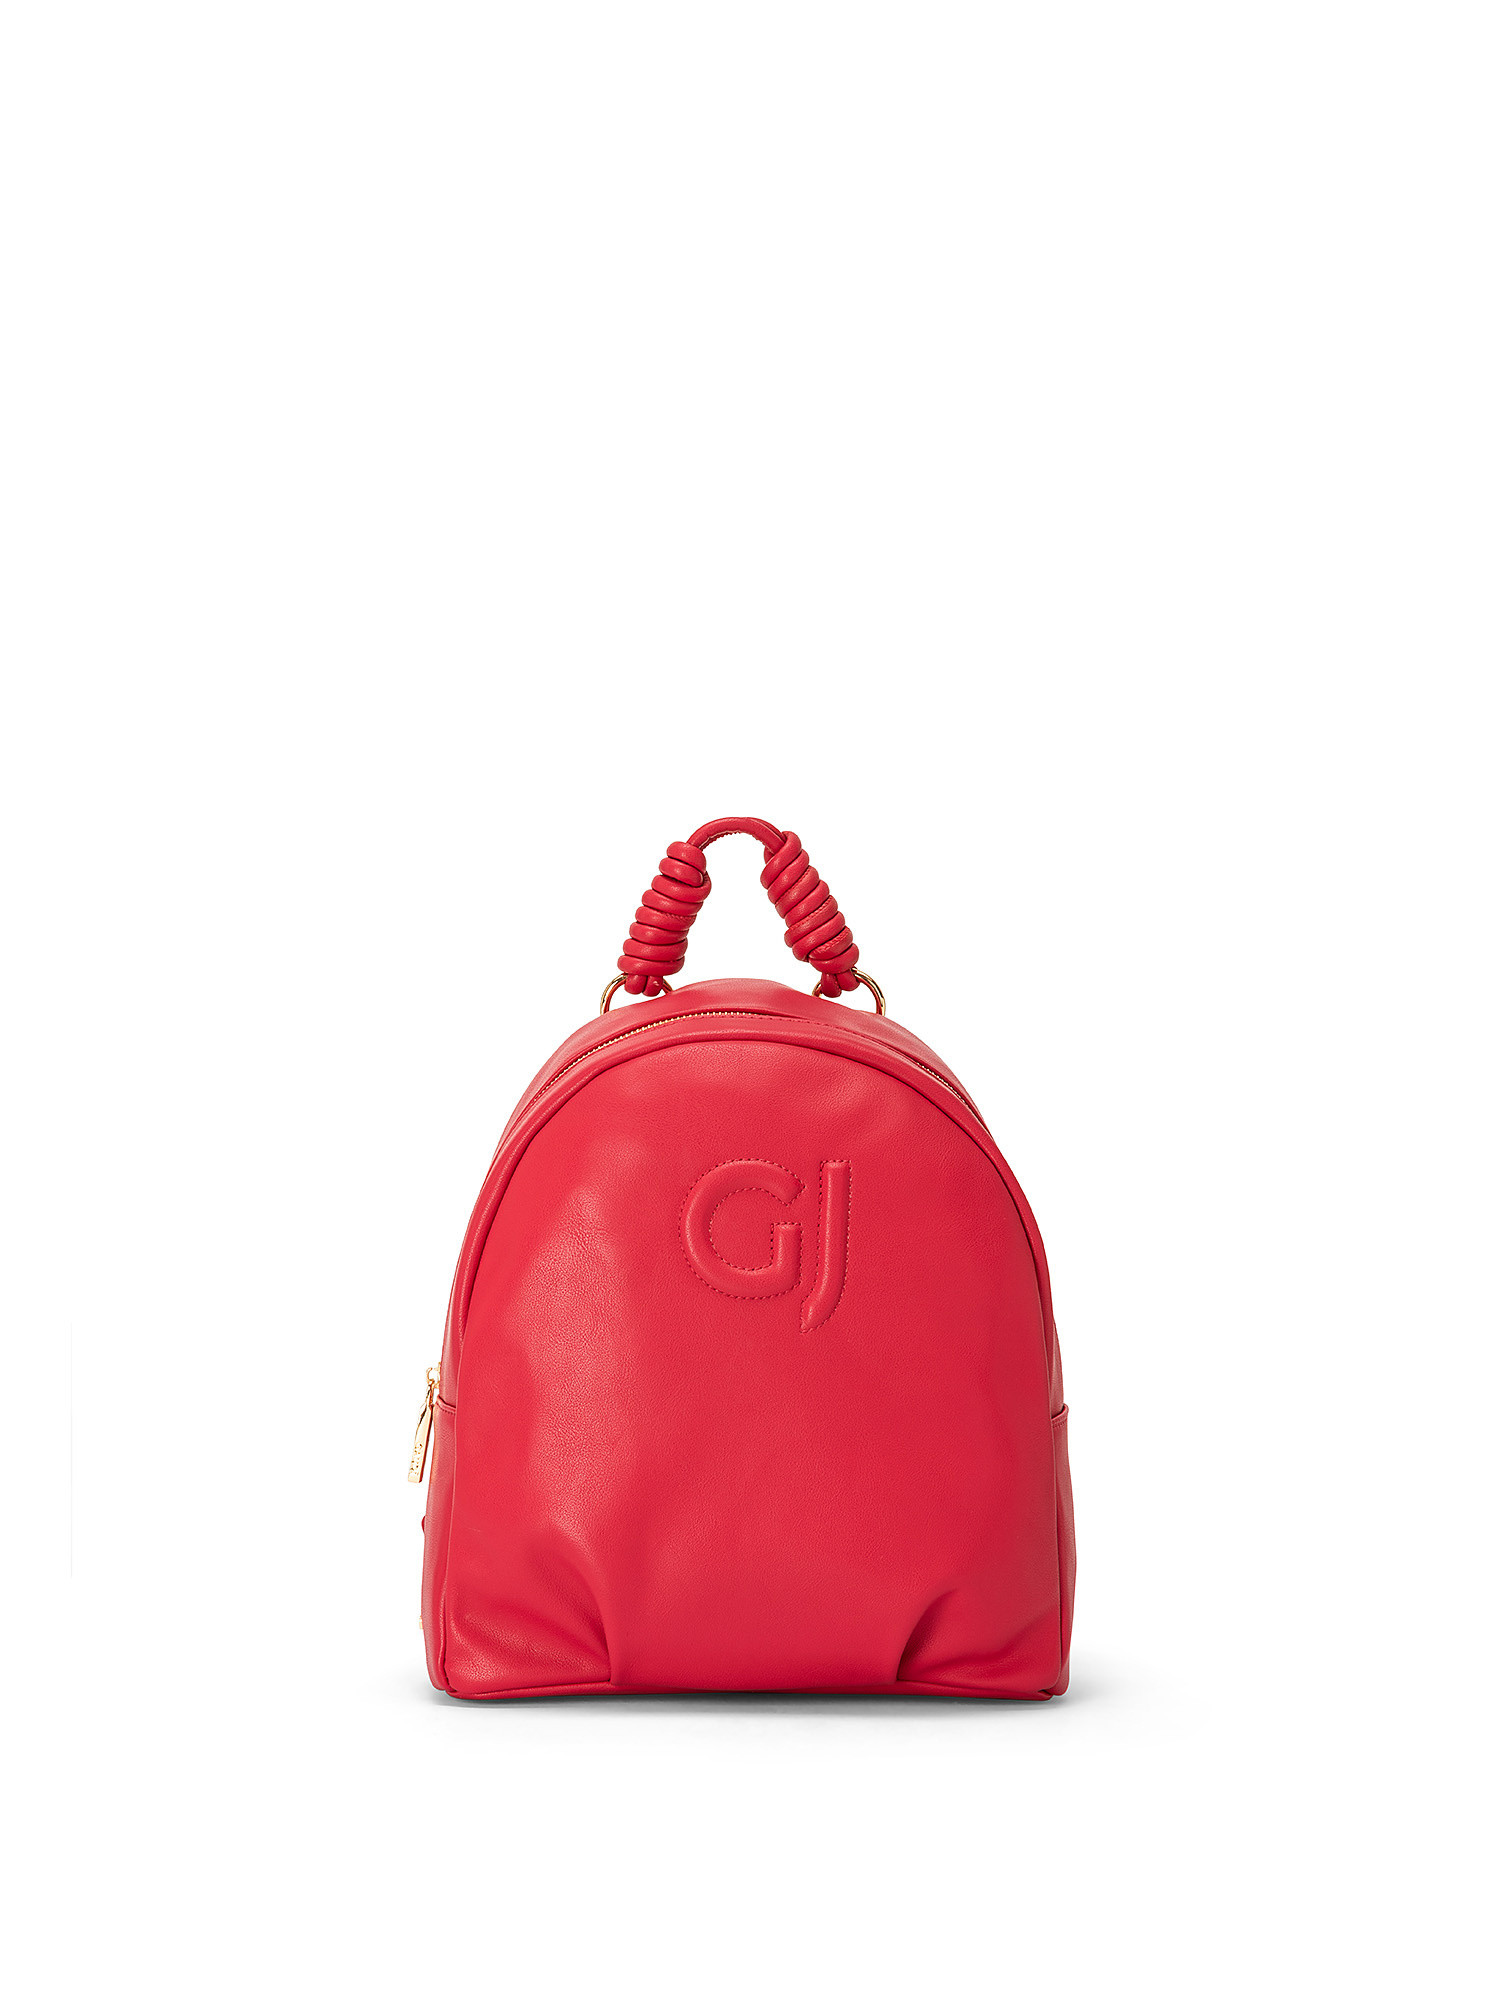 Zade backpack, Red, large image number 0